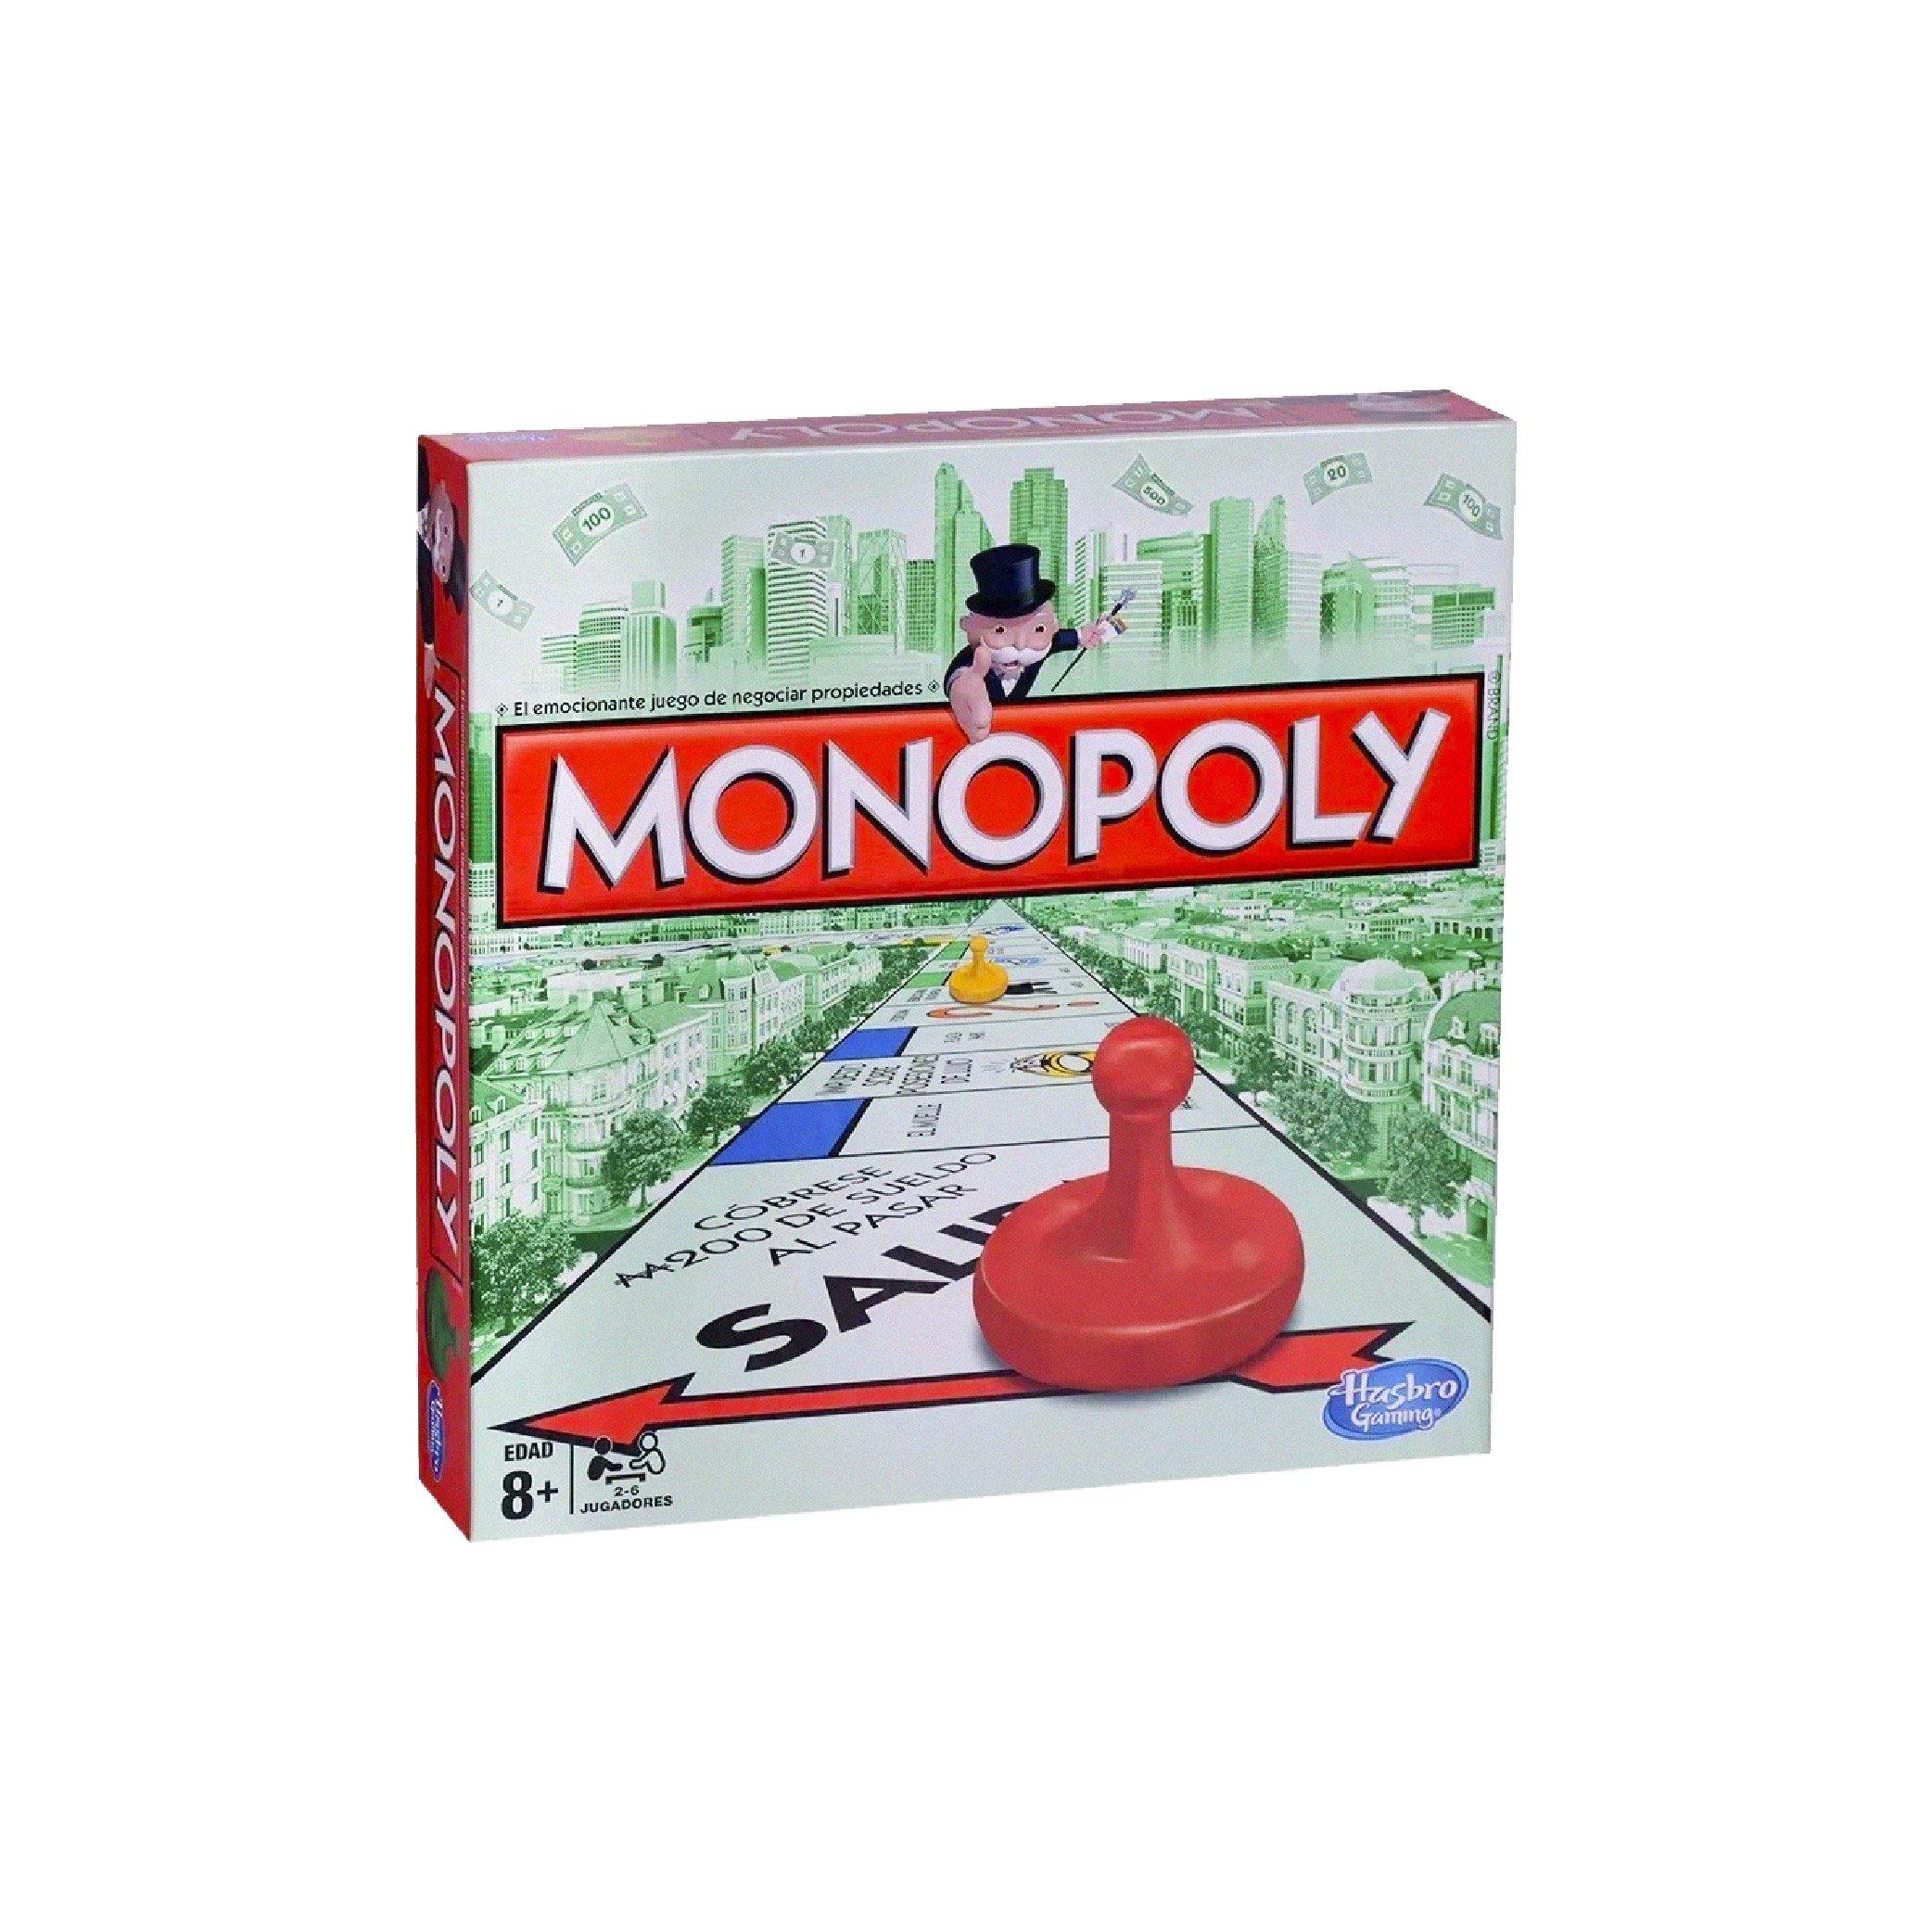 Monopoly clásico – El Deportista